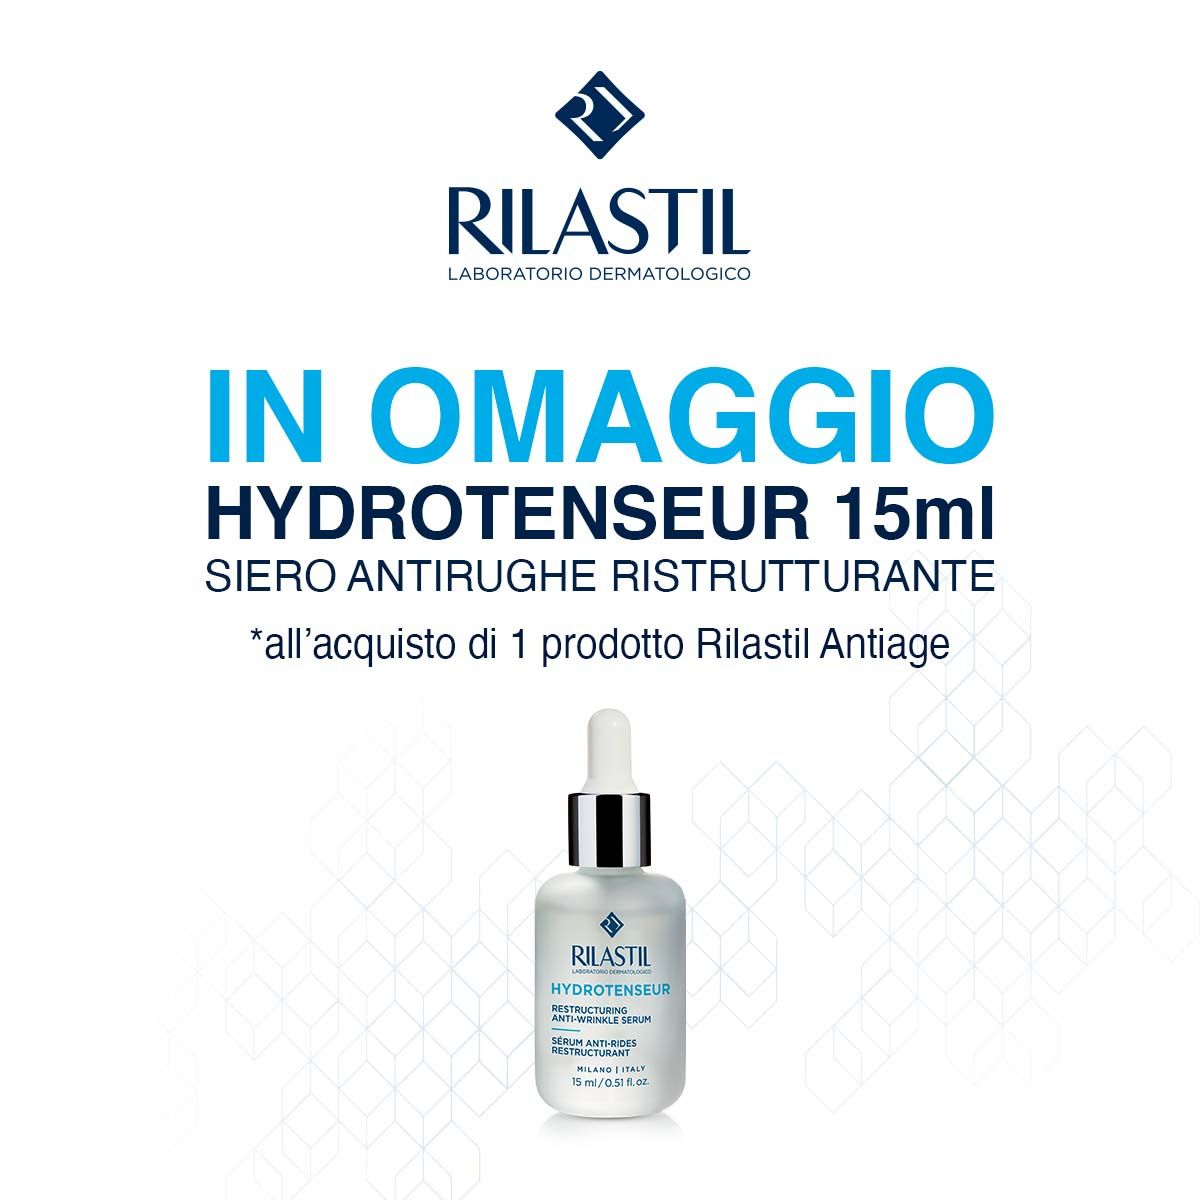 Acquista 1 prodotto Rilastil Antiage, ricevi in omaggio il siero antirughe ristrutturante hydrotenseur 15ml!